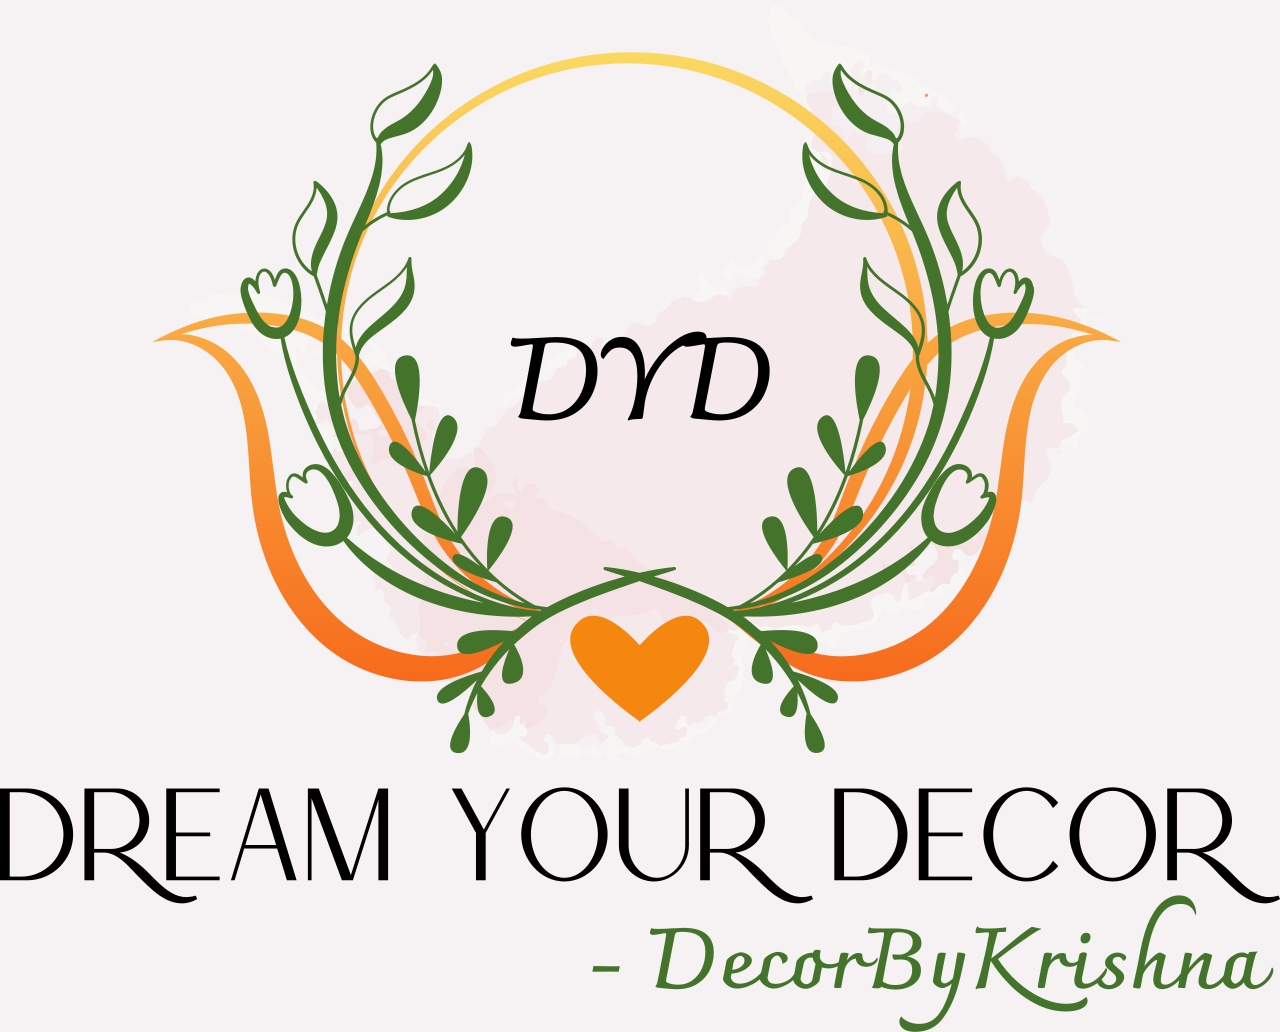 Dream Your Decor 's logo